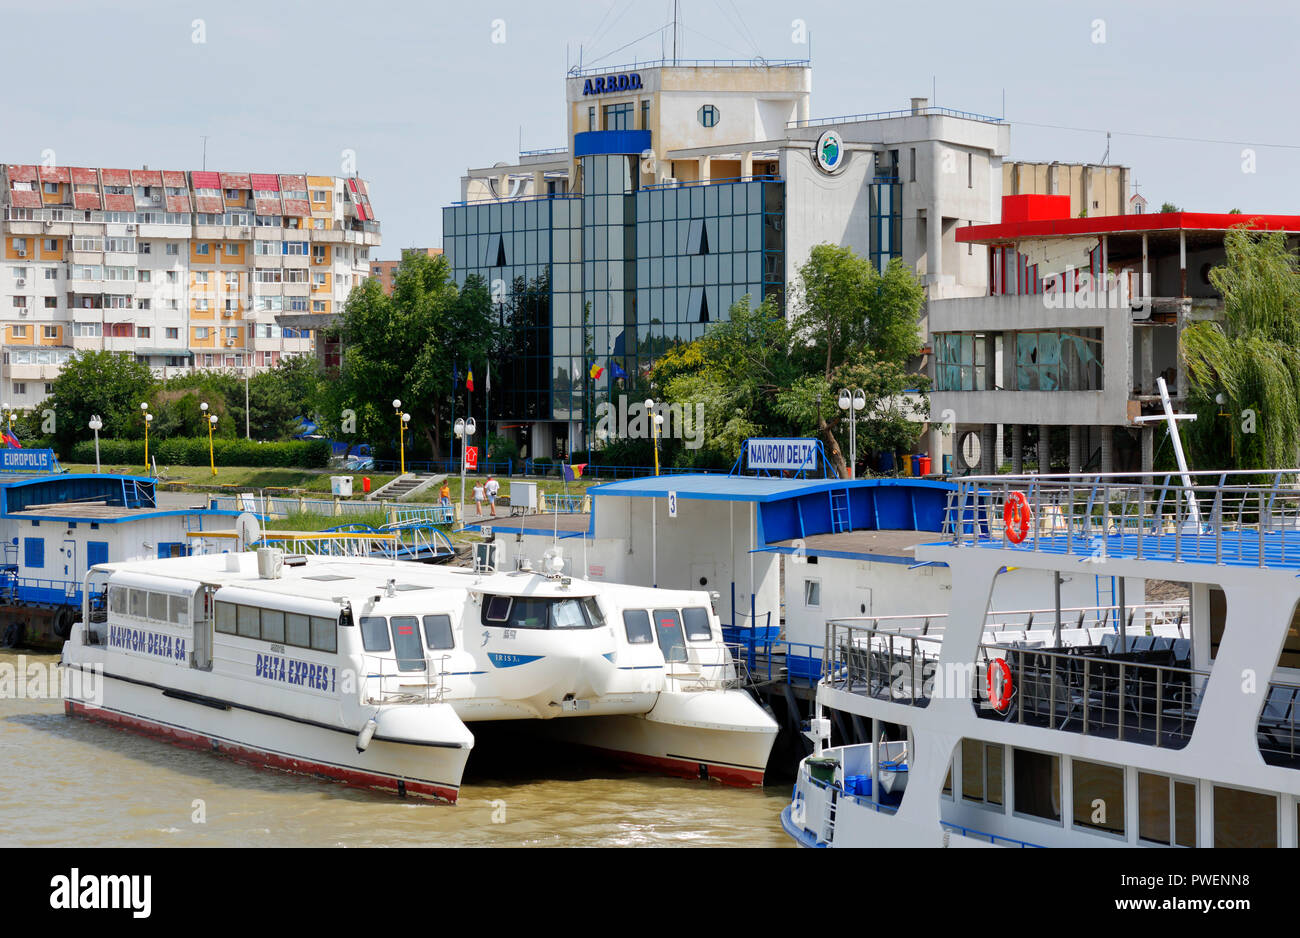 La Roumanie, au bord du Danube Tulcea, Saint George, comté de Tulcea, Dobroudja, porte vers le Delta du Danube, ville, port, ARBDD, institut de recherche de la Réserve de biosphère du delta du Danube, de l'administration, l'embarcadère, les navires d'excursion Banque D'Images